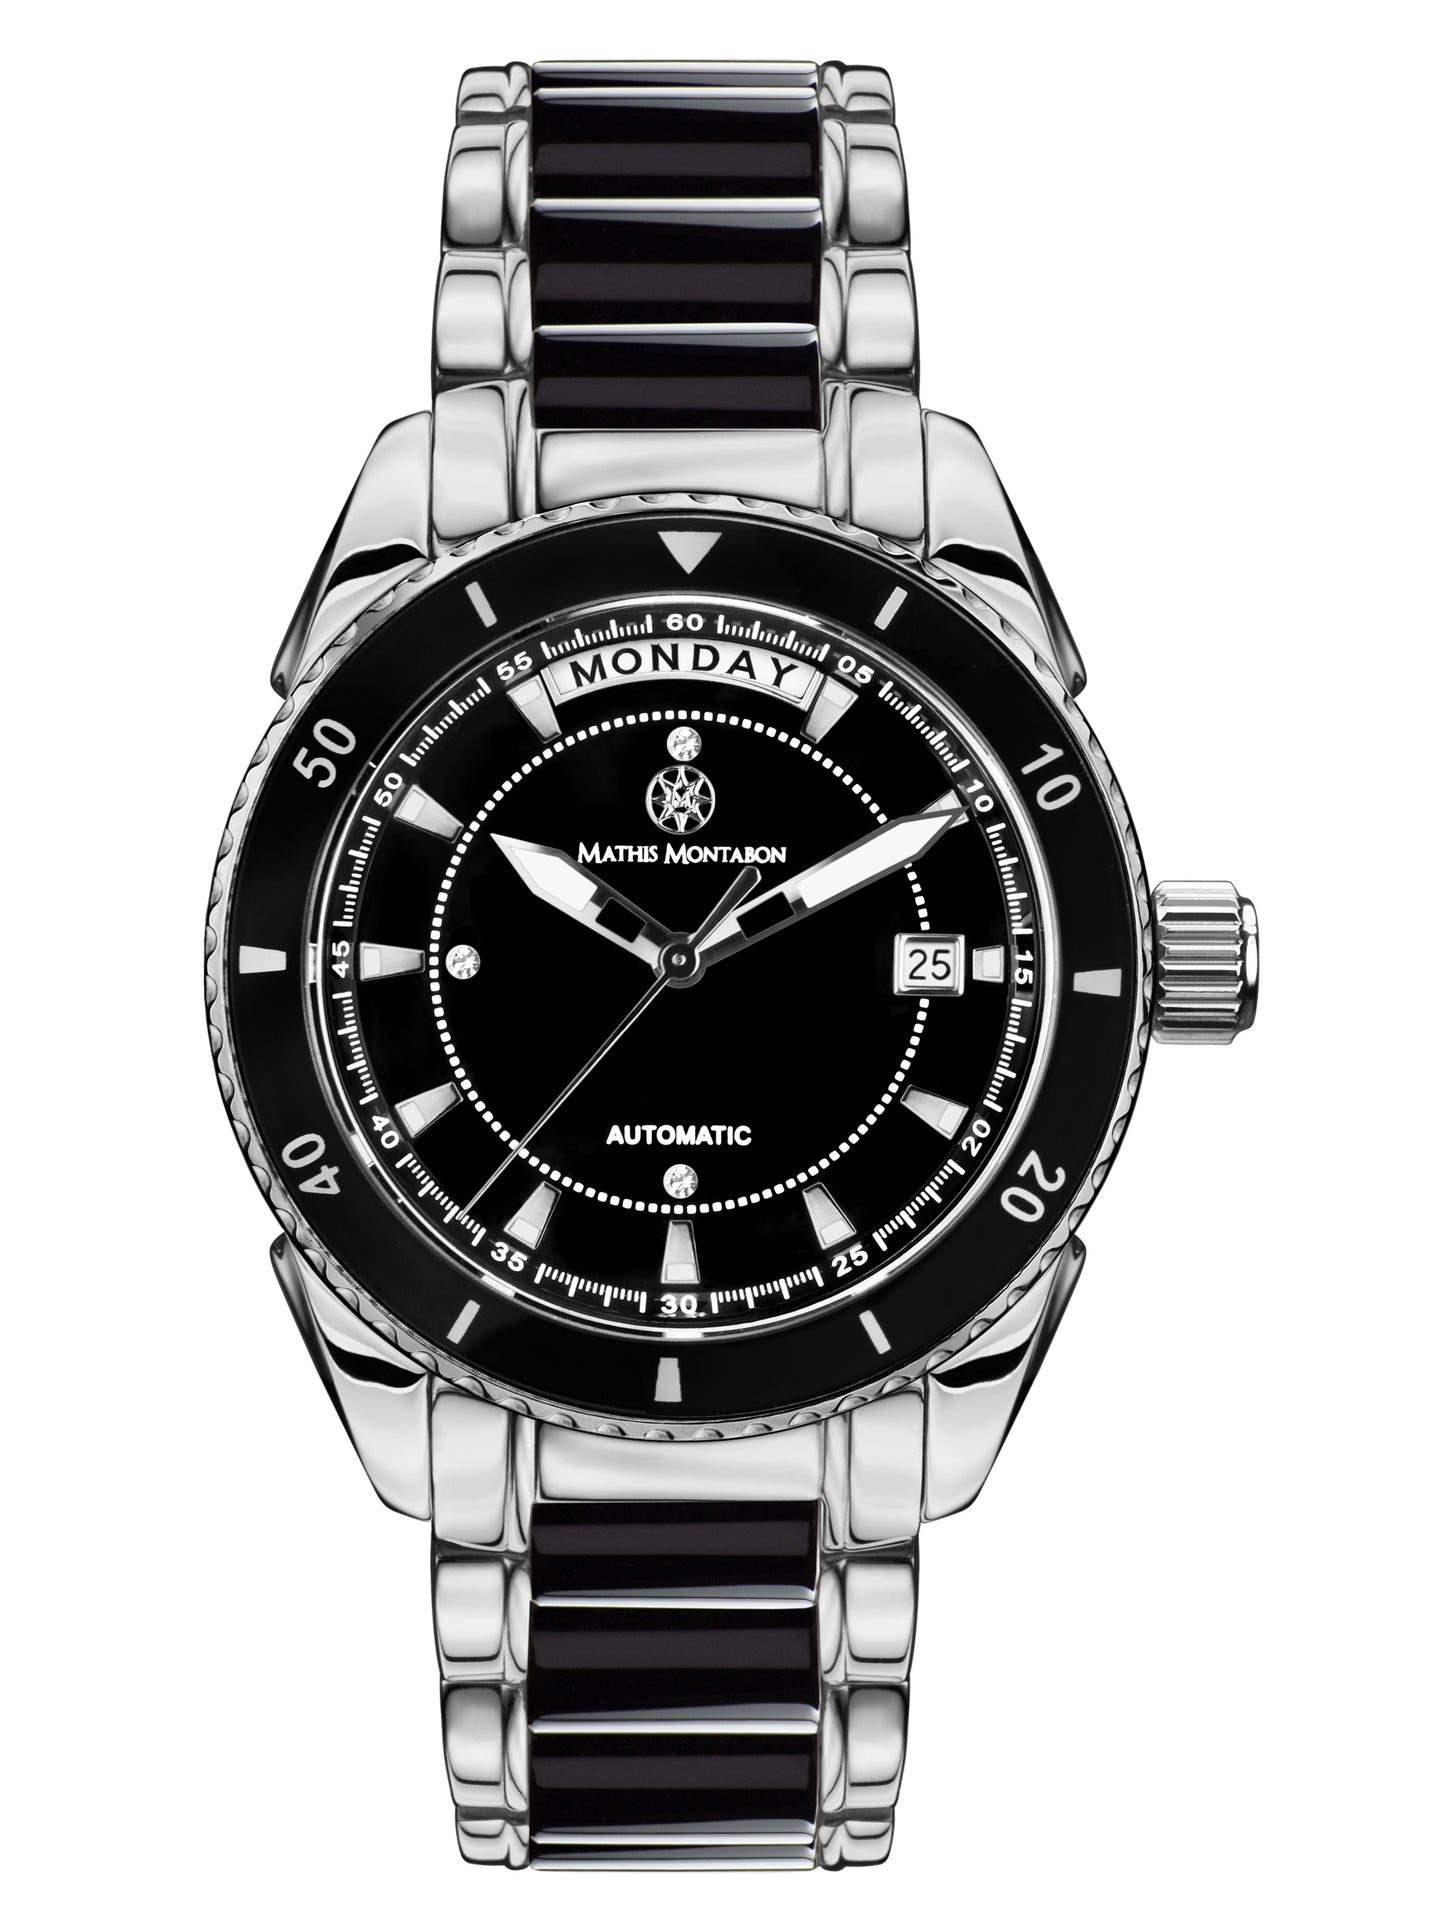 Automatic watches — La Magnifique — Mathis Montabon — schwarz II